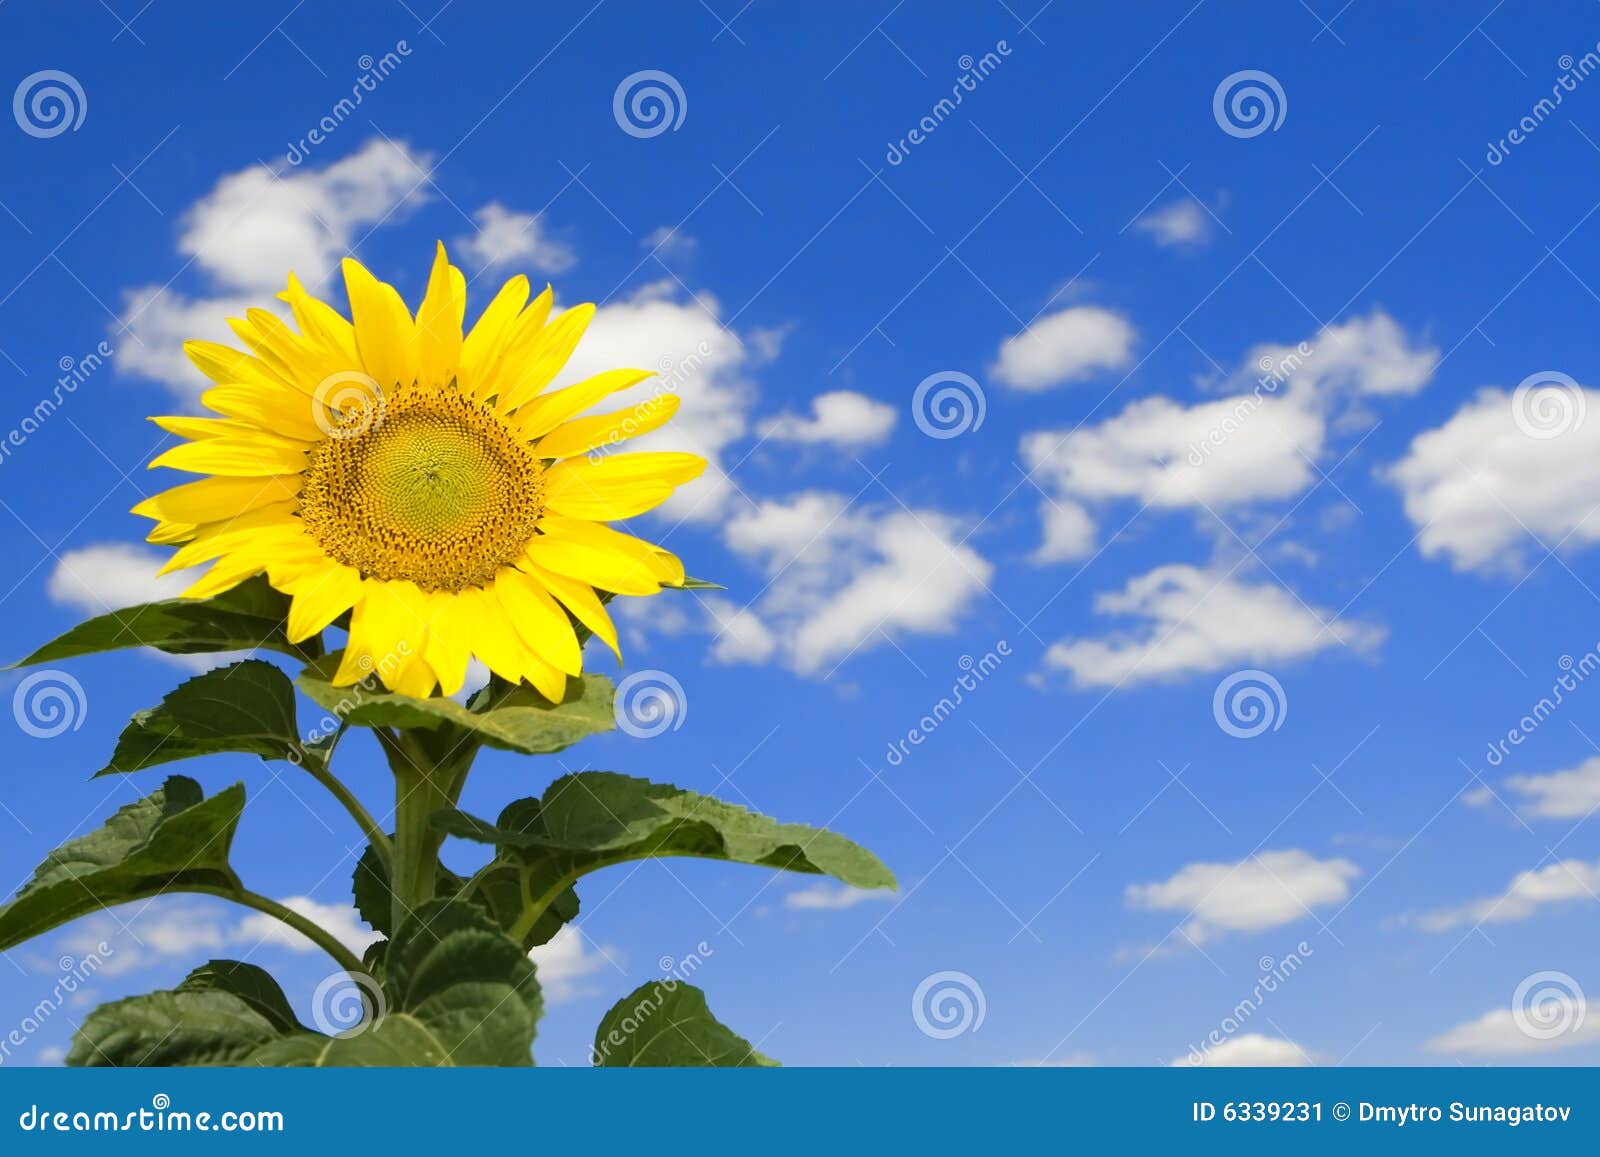 Amazing Sunflower And Blue Sky Stock Image - Image: 6339231